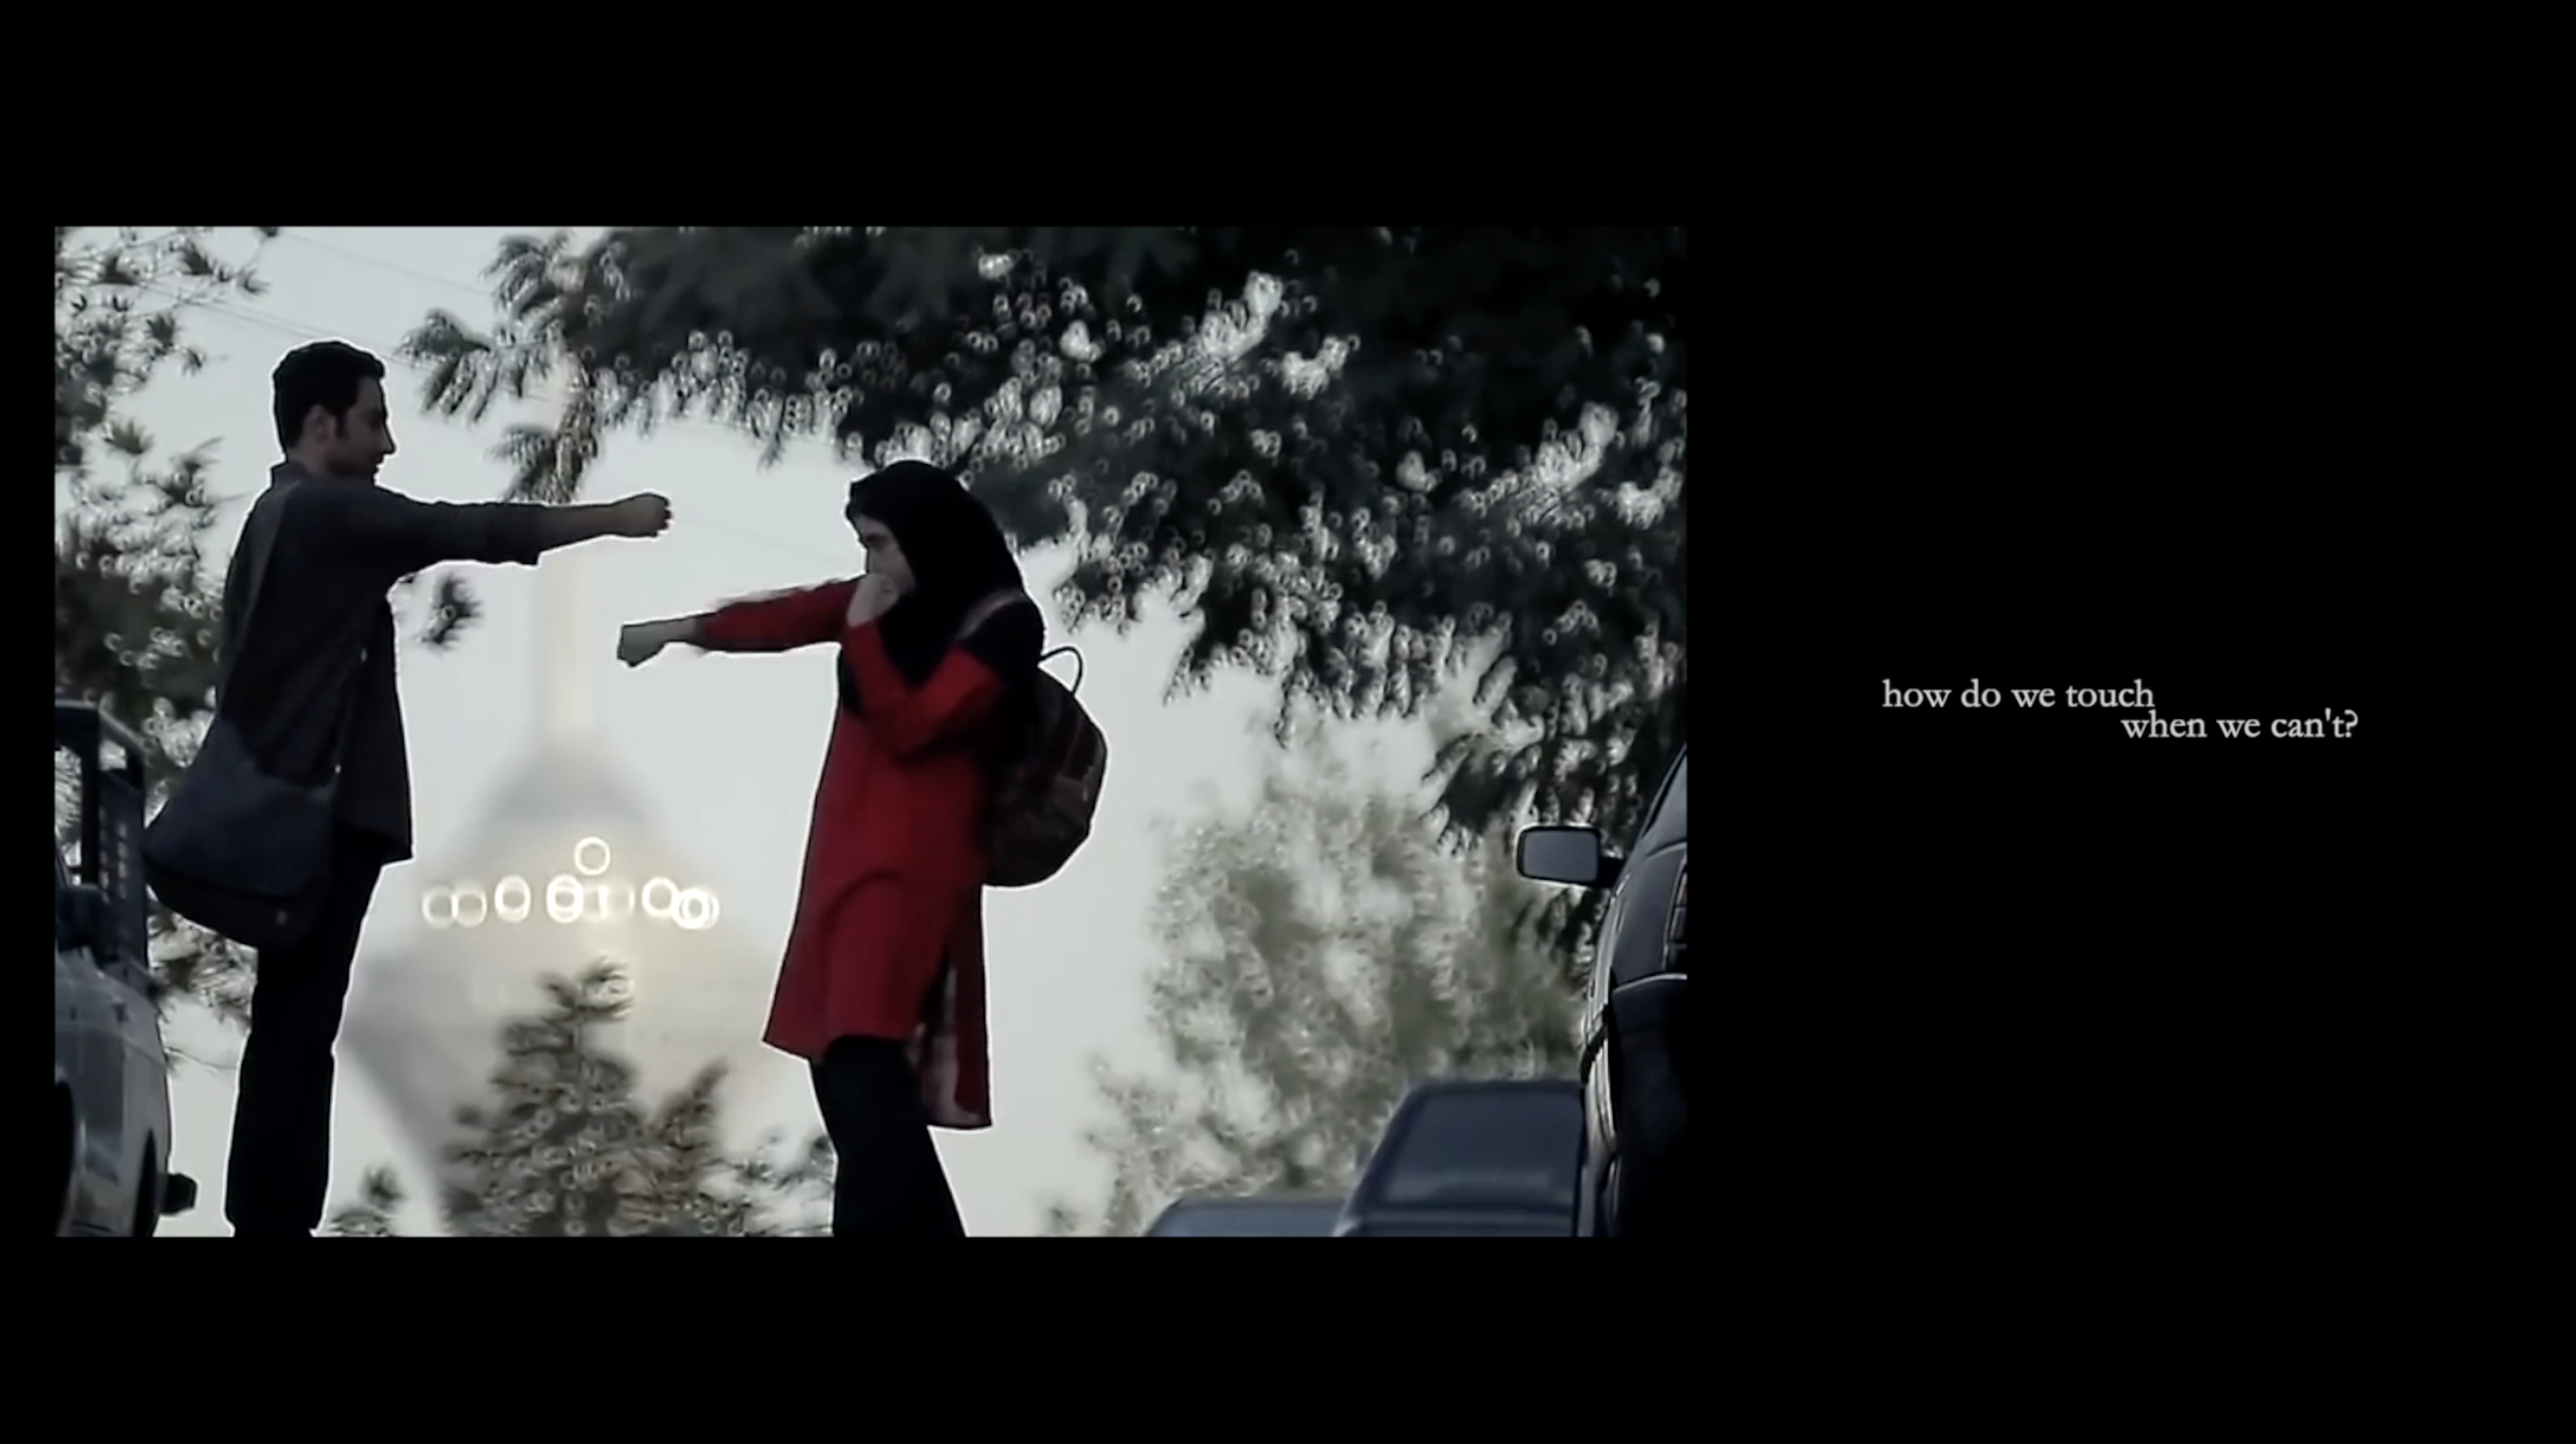 iran çantası filmi 26 uçan süpürge uluslararası kadın filmleri festivali